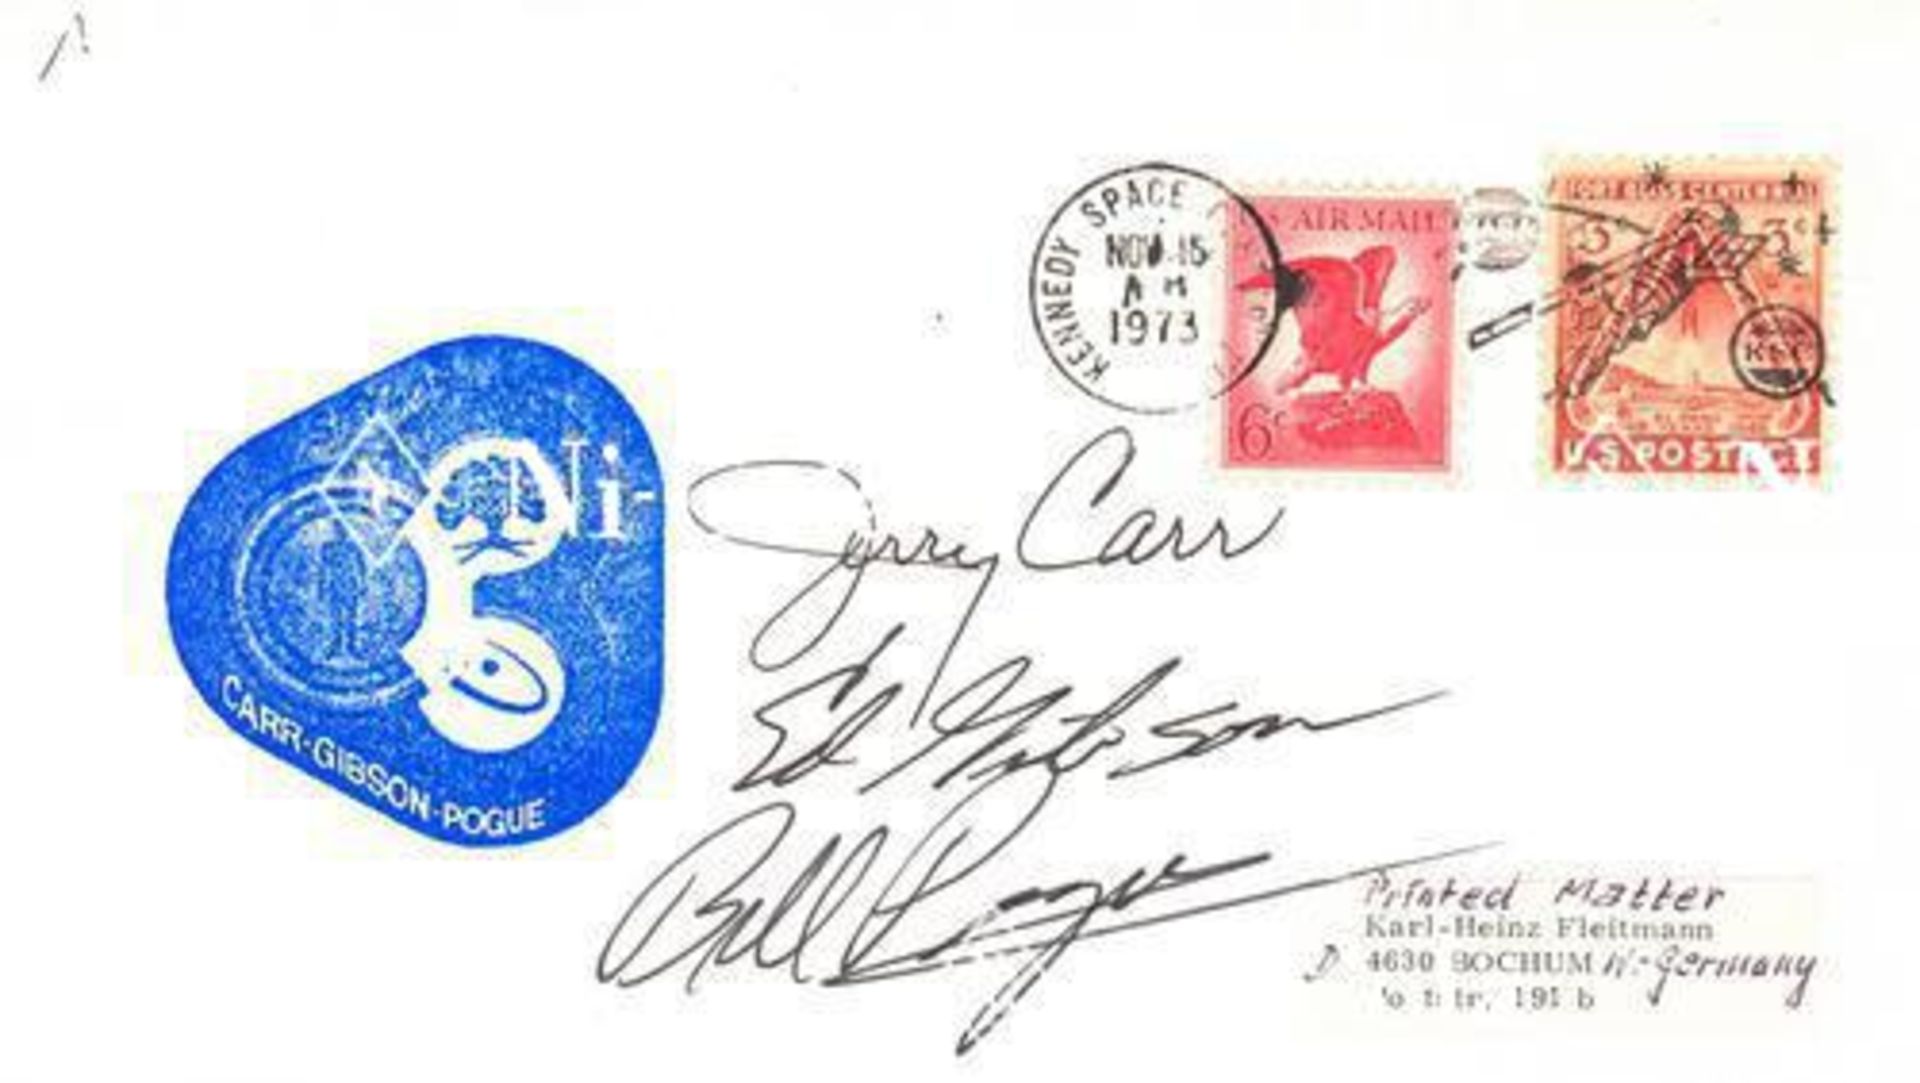 Accessoires Frankierter Briefumschlag 'Skylab IV' signiert von der Besatzung Gerald Carr, Edward Gib